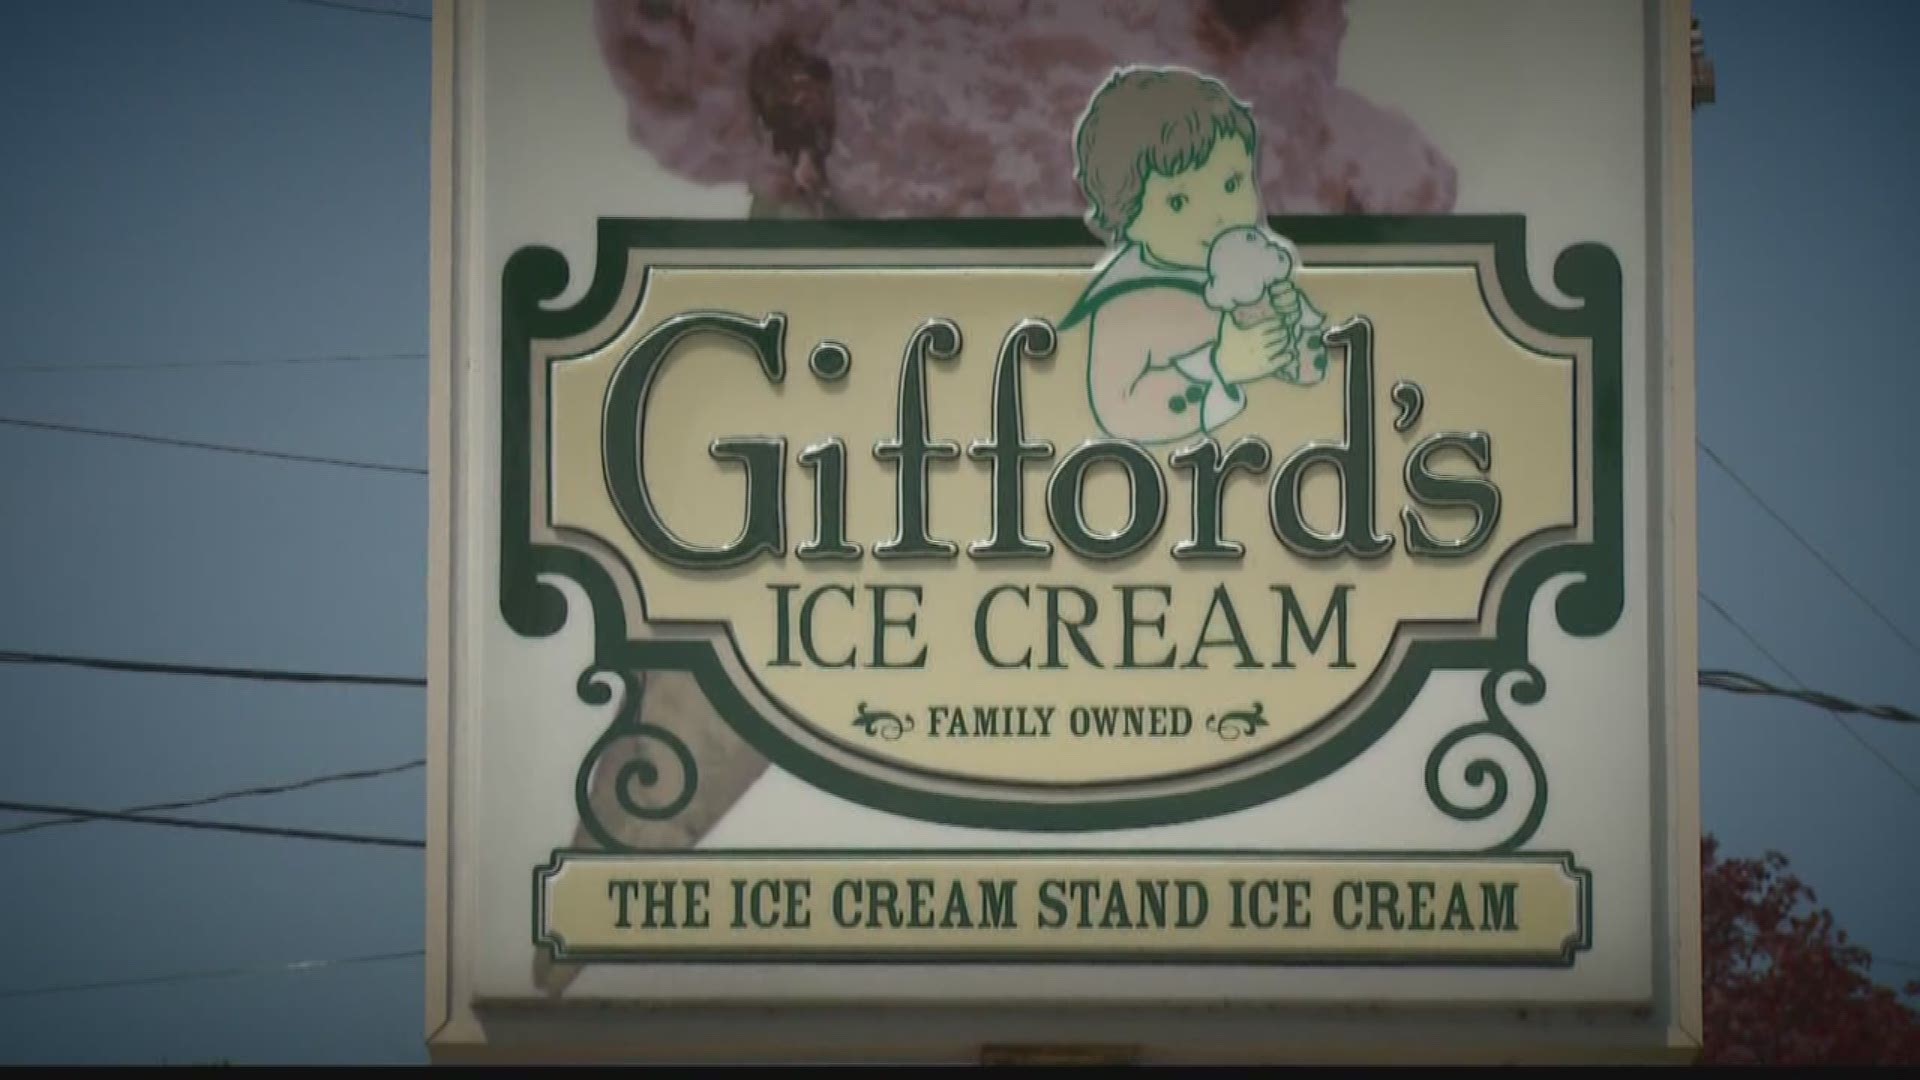 BG's ME: Gifford's Ice Cream